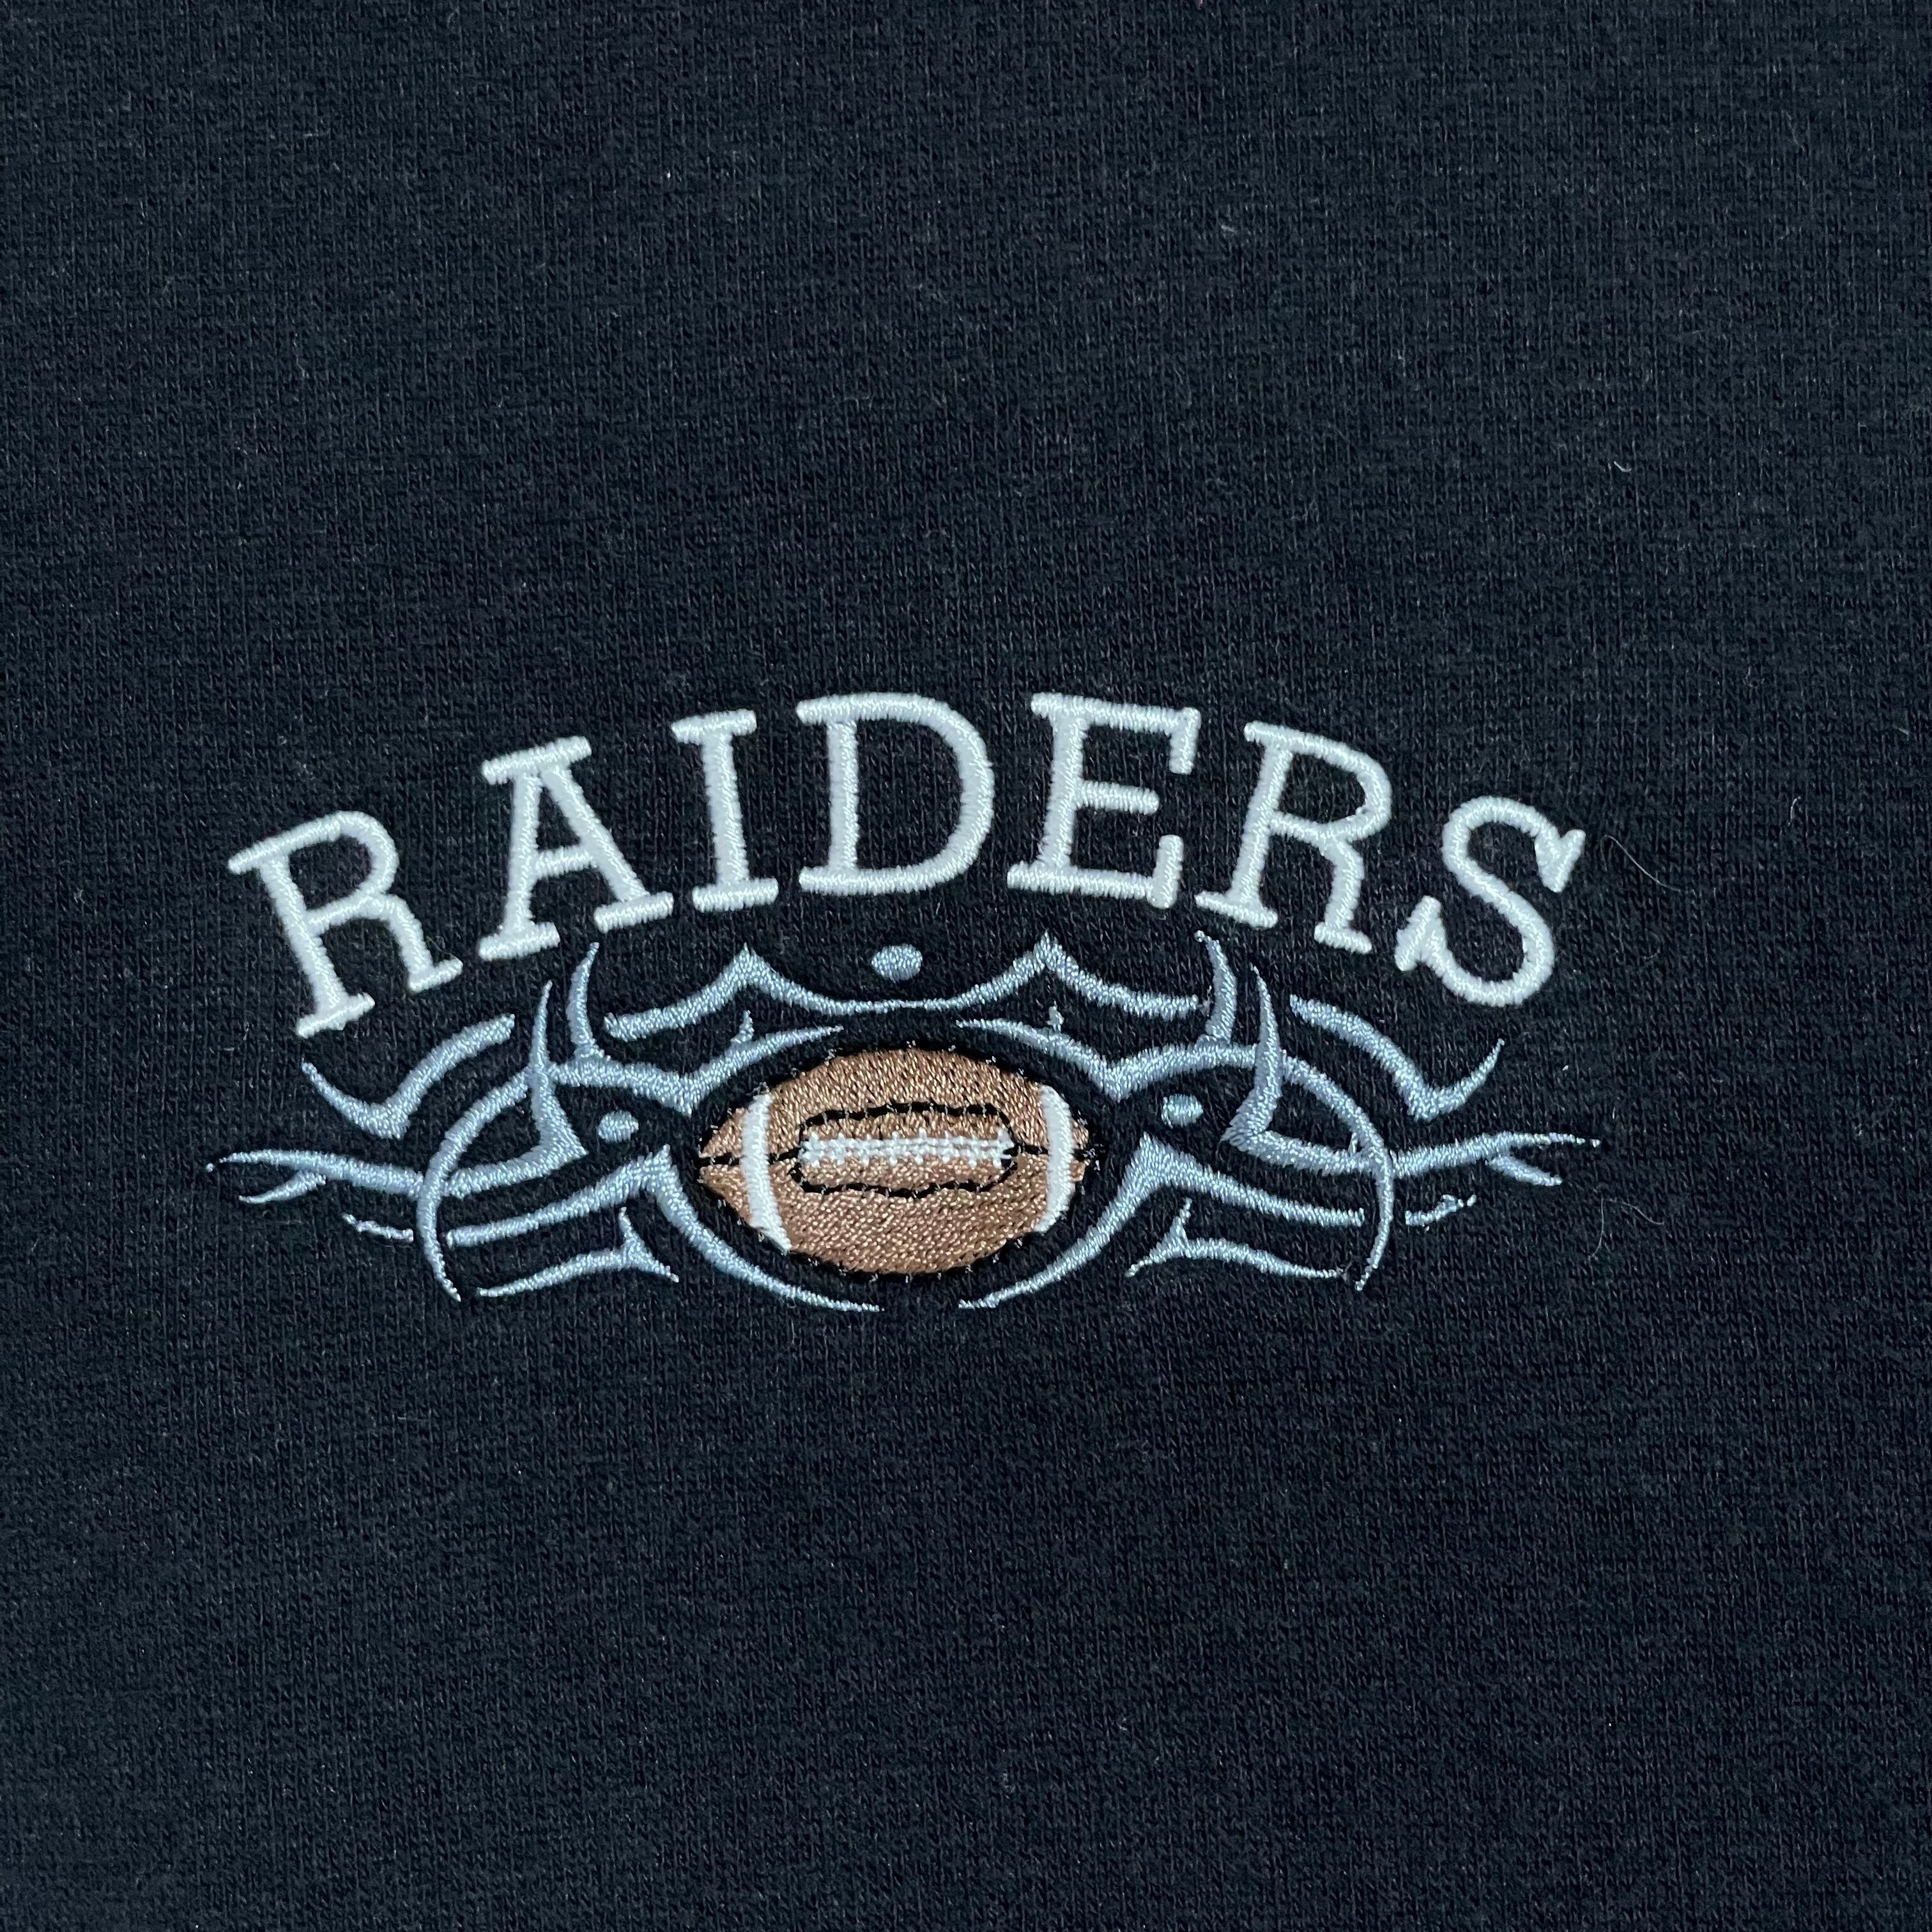 90s カナダ製 レイダース RAIDERS NFL トレーナー